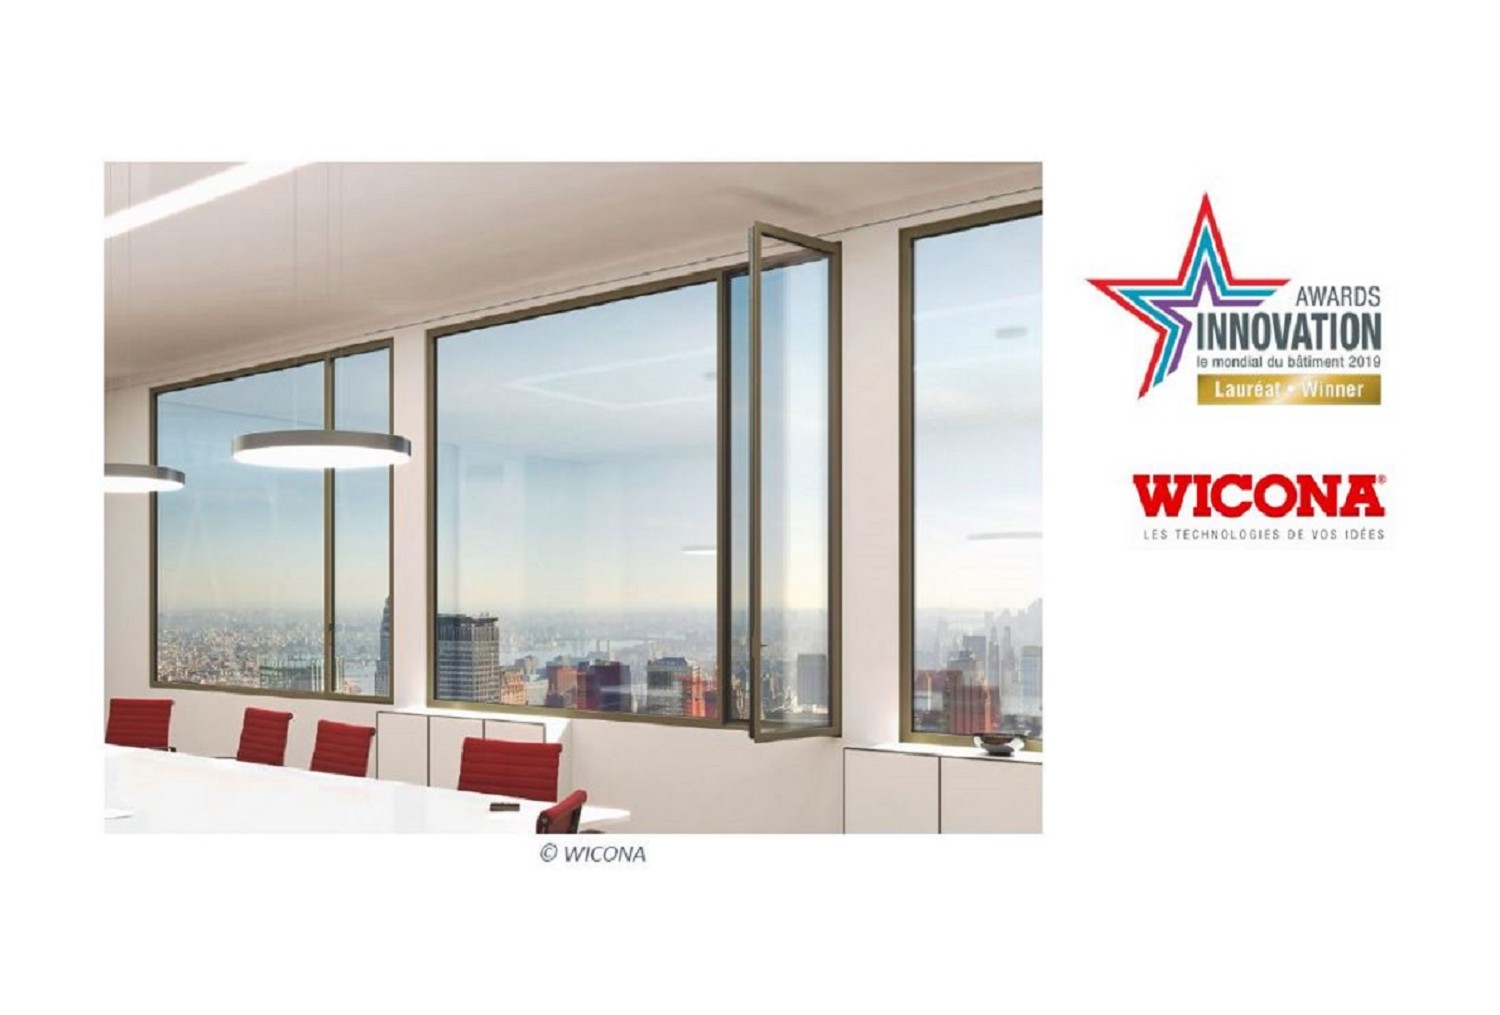 WICLINE 75 MAX, 1ère fenêtre en aluminium recyclé, lauréate du Concours Awards de l’Innovation – Batimat 2019